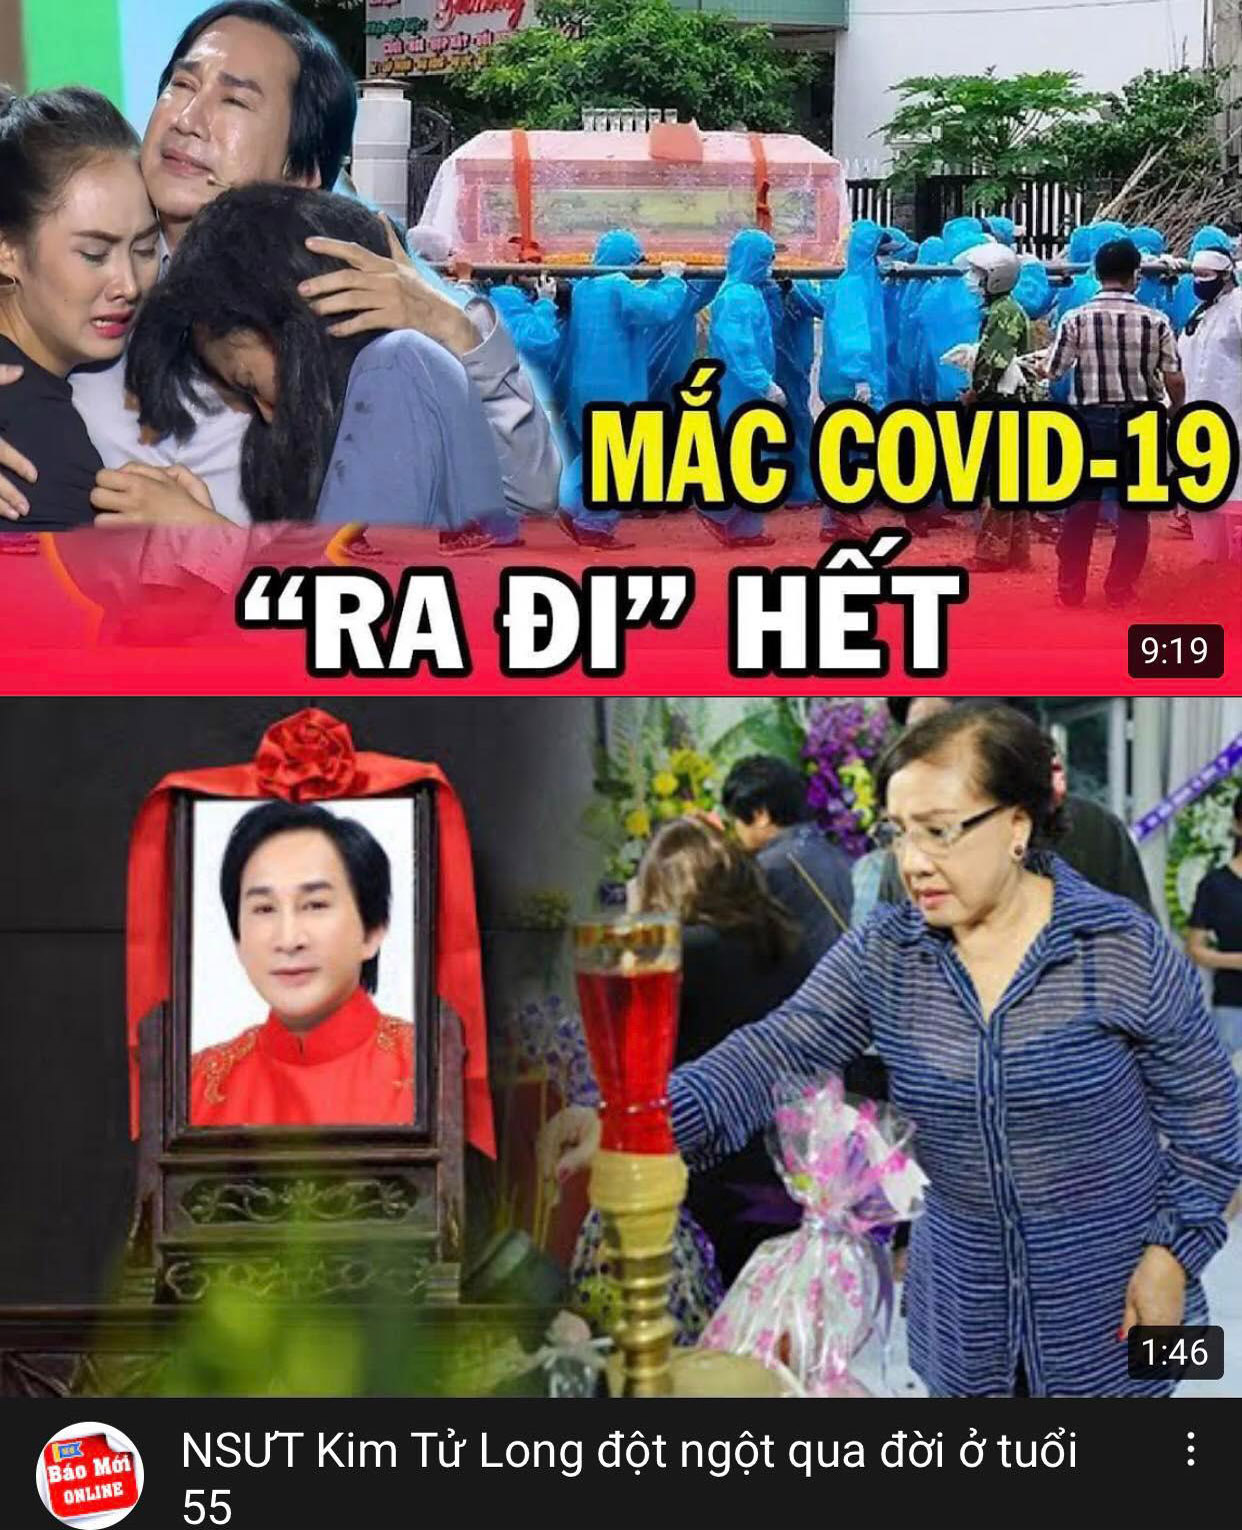 Tin nghệ sĩ Kim Tử Long qua đời vì Covid-19 là sai sự thật - 1